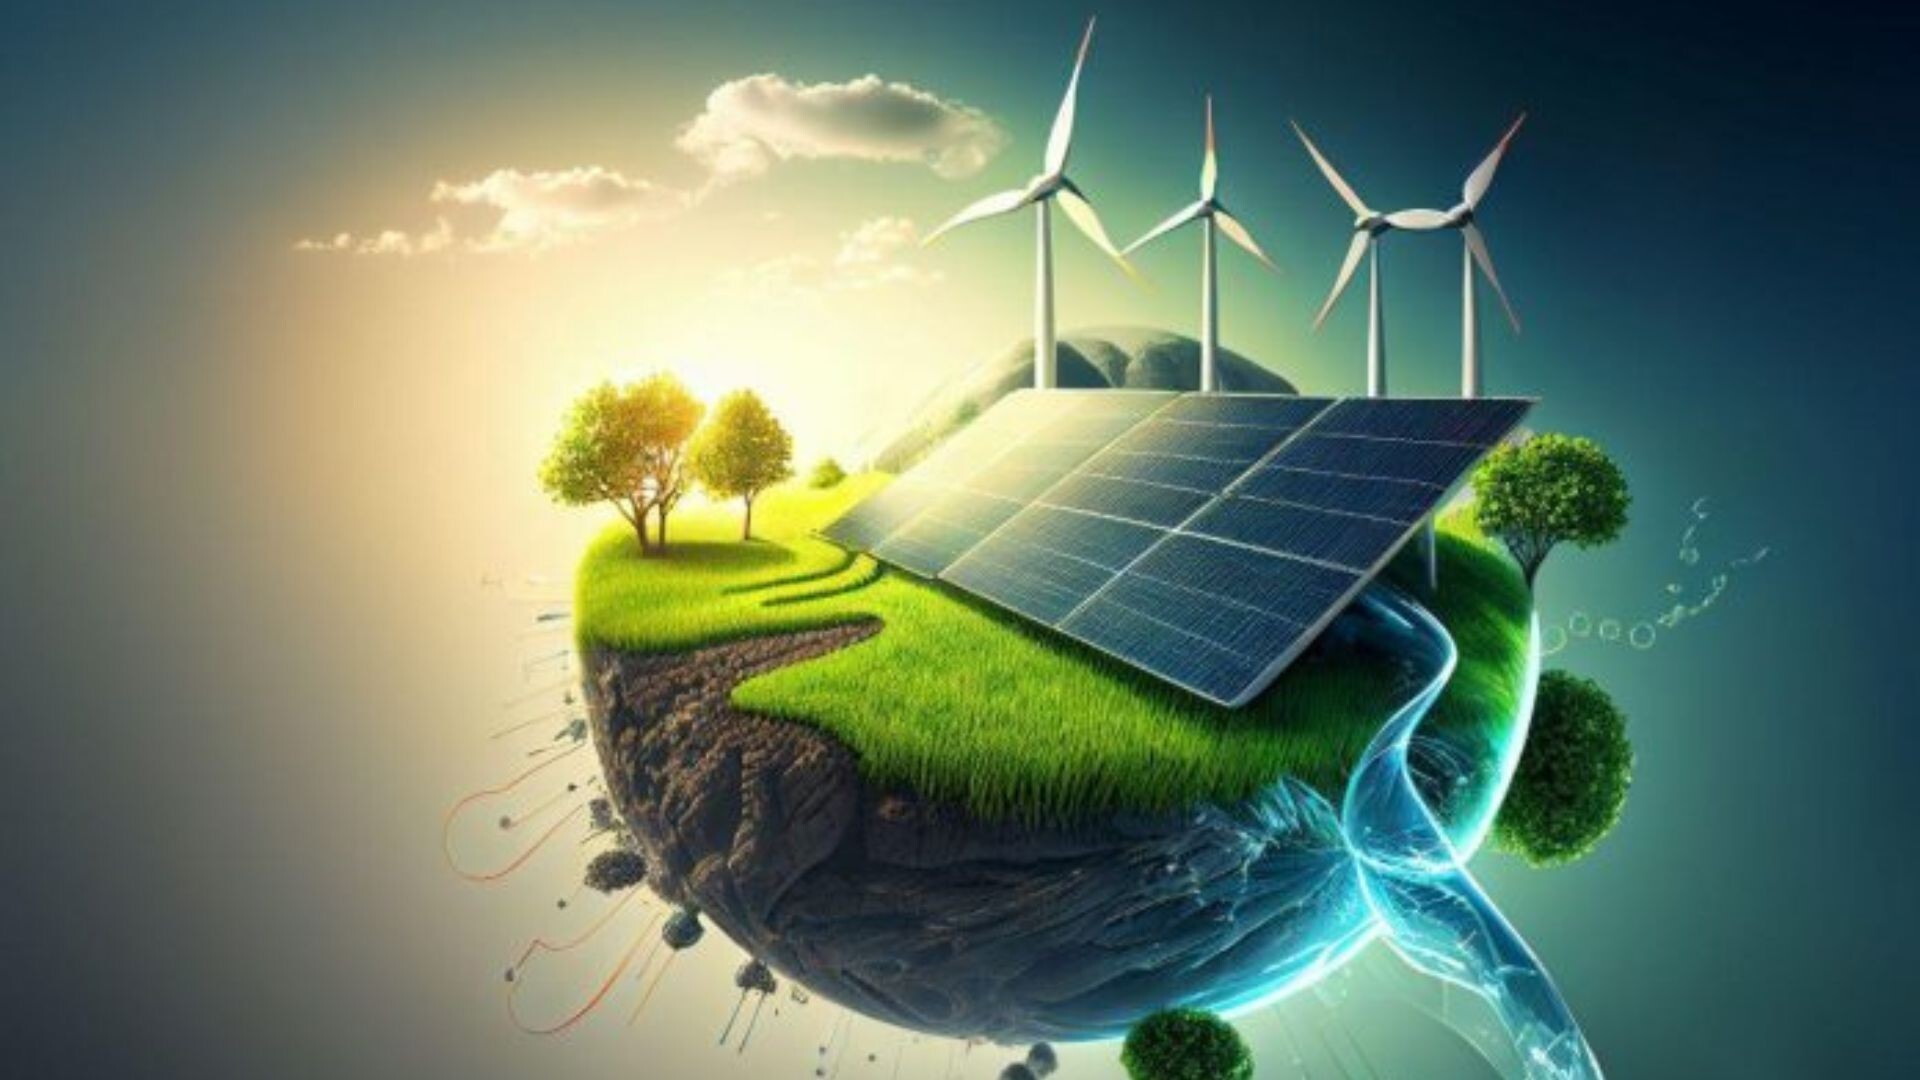 Dünya Ekonomik Forumu: Temiz enerji dönüşümünün hızı dünyadaki belirsizlikler nedeniyle yavaşlıyor